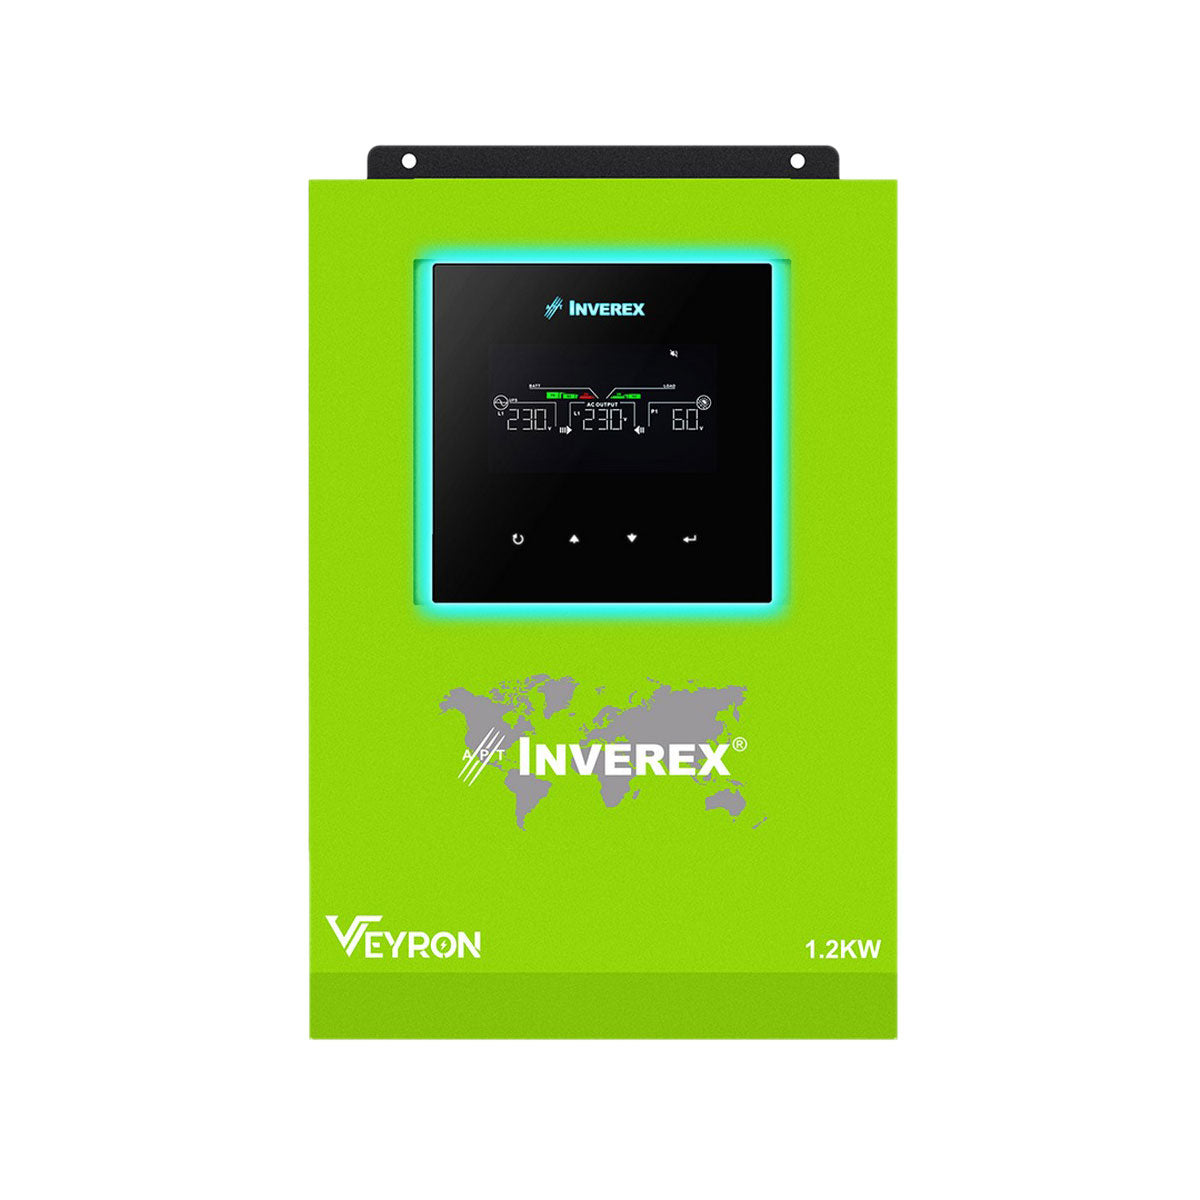 Inverex Veyron 1.2 KW Mppt Solar Inverter Auto Synchronization with Inverex power wall 5 Years Brand Warranty